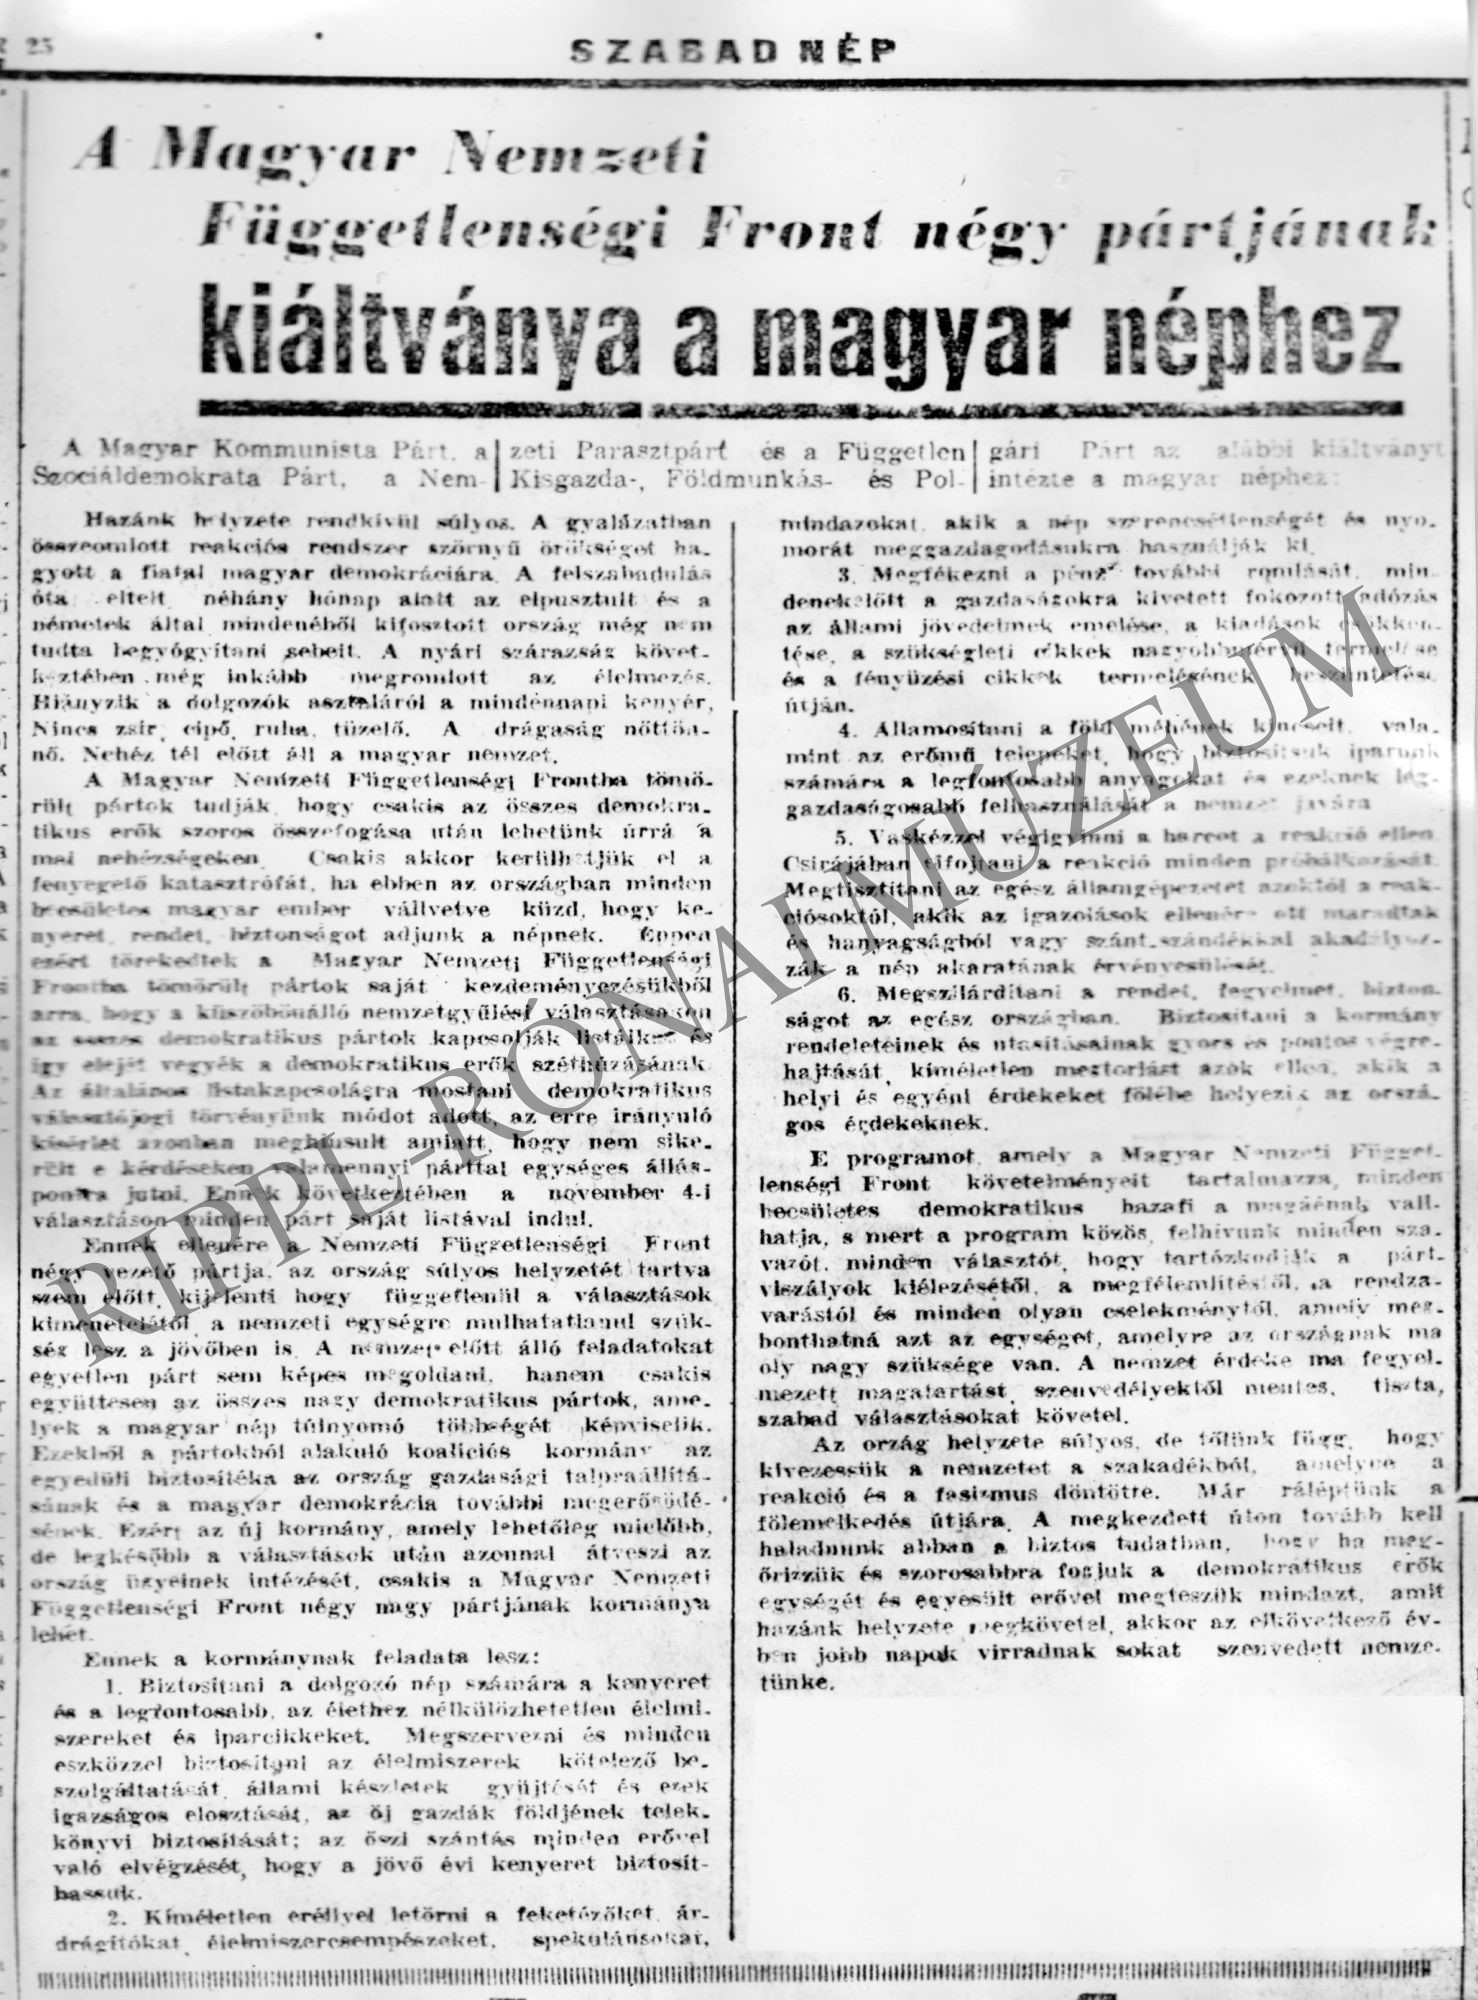 A Szabad Nép cikke: "A Mgyar Nemzeti Függetlensáégi Front négy pártjának kiáltványa magyar néphez" (Rippl-Rónai Múzeum CC BY-NC-SA)